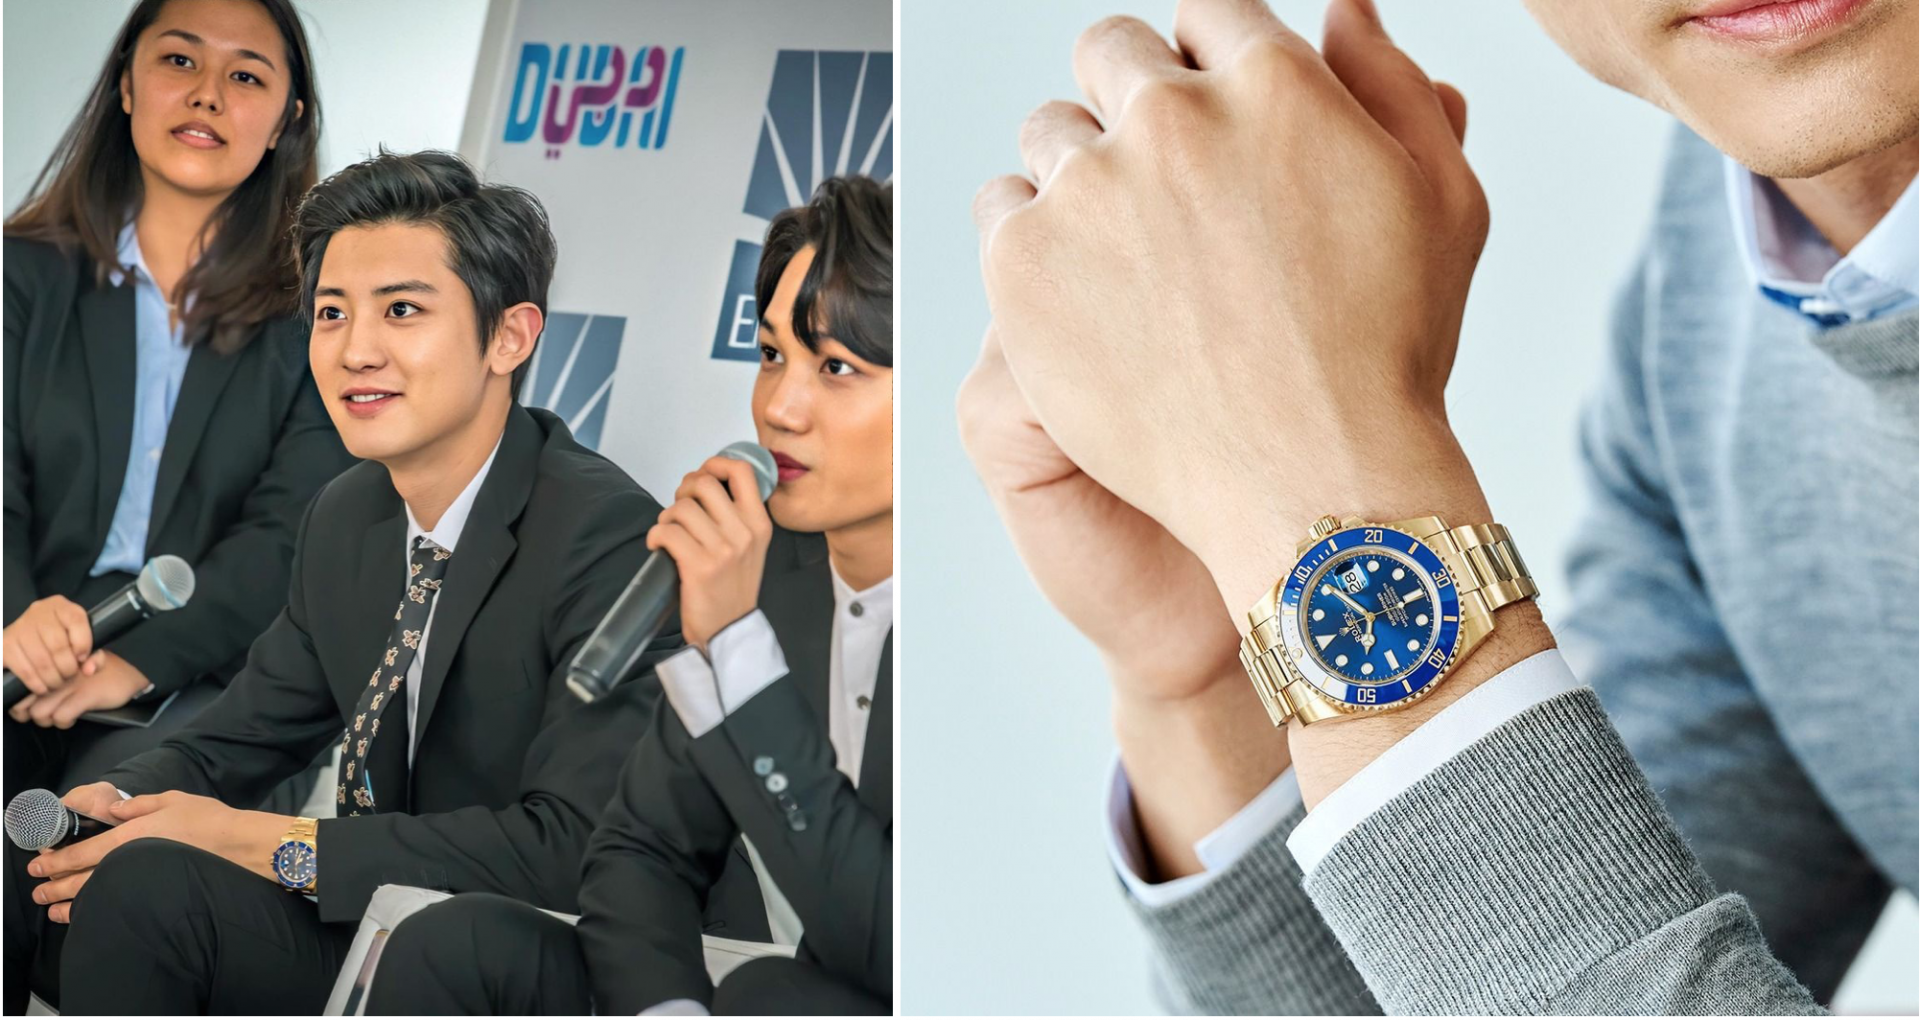 Chiếc đồng hồ Rolex Submariner được làm bằng vàng như làm tăng thêm sự lịch lãm, sang trọng cho trưởng nhóm Chanyeol (EXO) trong trang phục vest. Giá của mẫu phụ kiện là 34,250 USD (khoảng 790 triệu đồng).